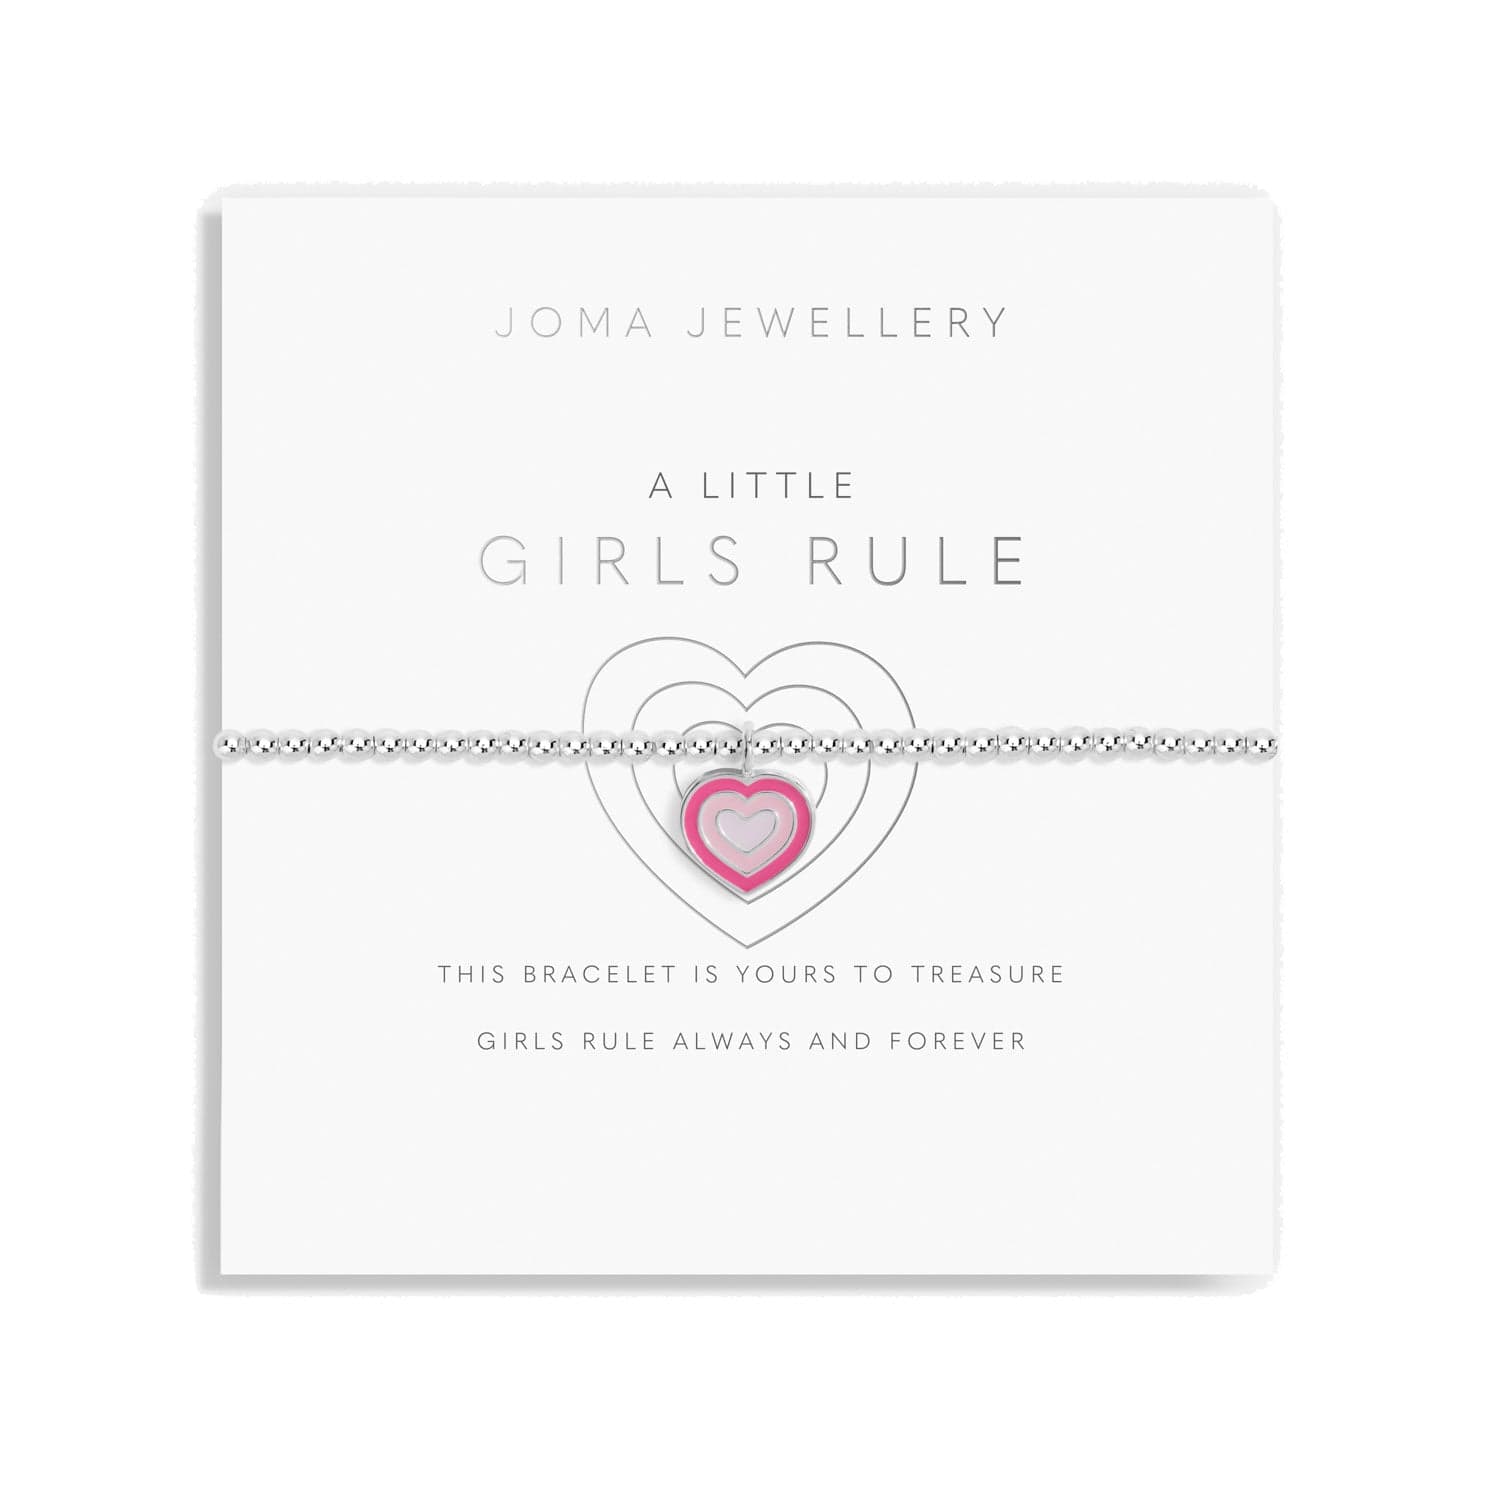 Joma Jewellery Childrens Bracelet Joma Jewellery Children's Bracelet - A Little Girls Rule